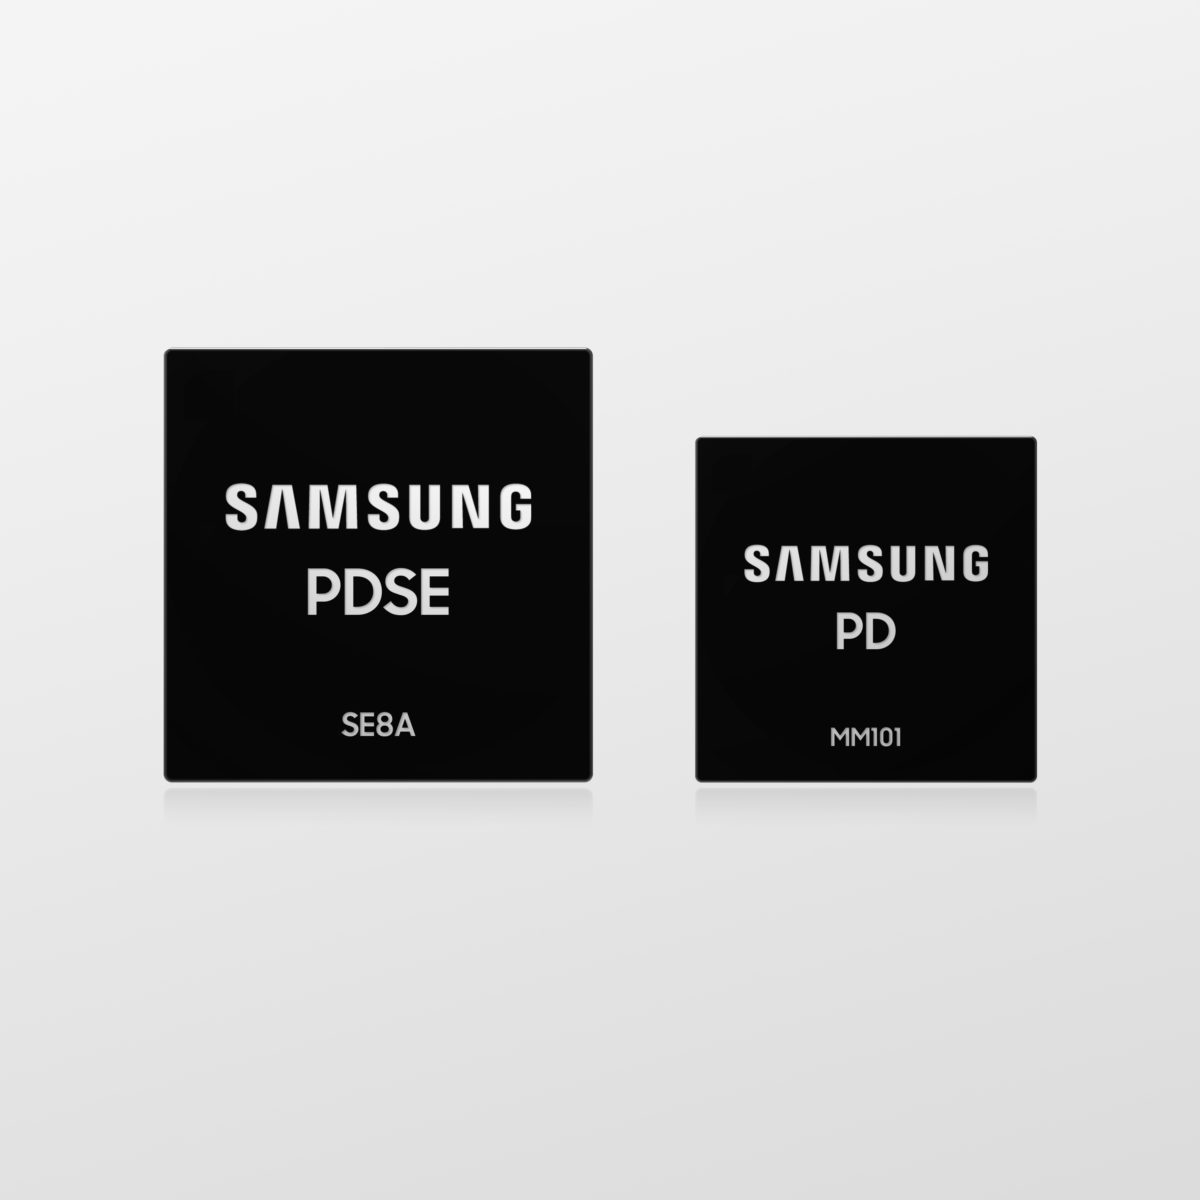 Samsung presenta nuevos controladores PD USB con carga rápida de 100 W y estándares PD 3.0